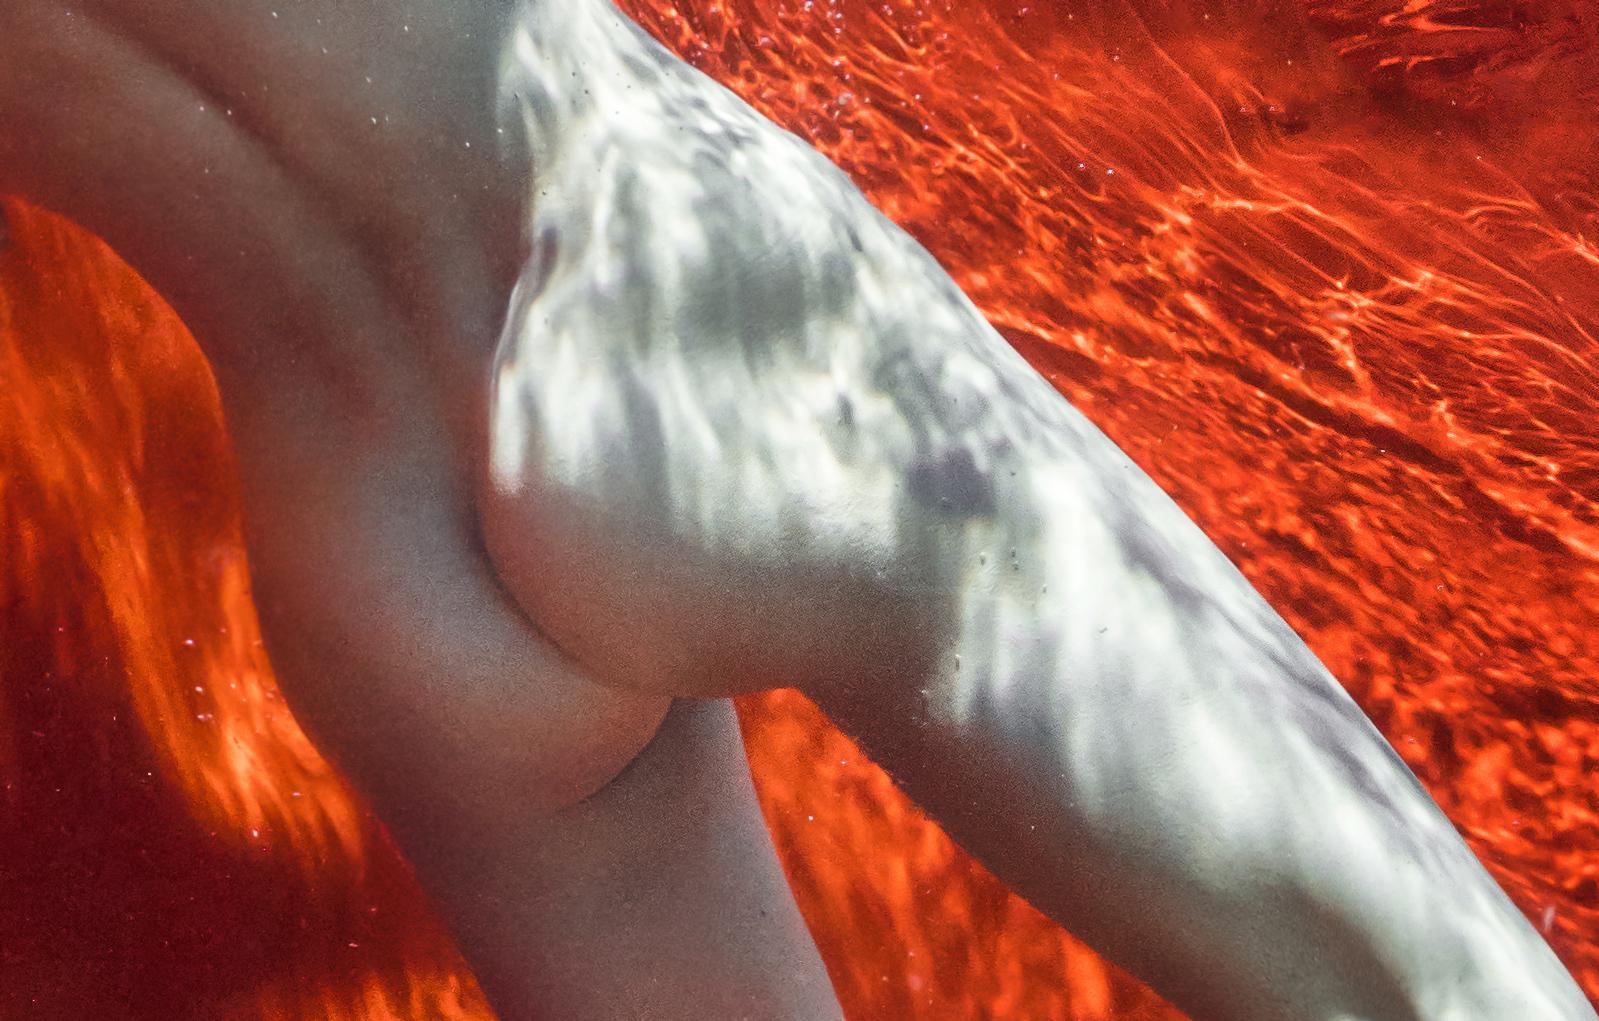 Ein Unterwasserfoto einer nackten jungen Frau, die in einem Pool vor einem leuchtend roten Hintergrund taucht.

Für Glück gibt es keine Regeln.  Ich war mir sicher, dass das neue Mädchen viel Übung brauchen würde - und lag falsch. Sie war einfach